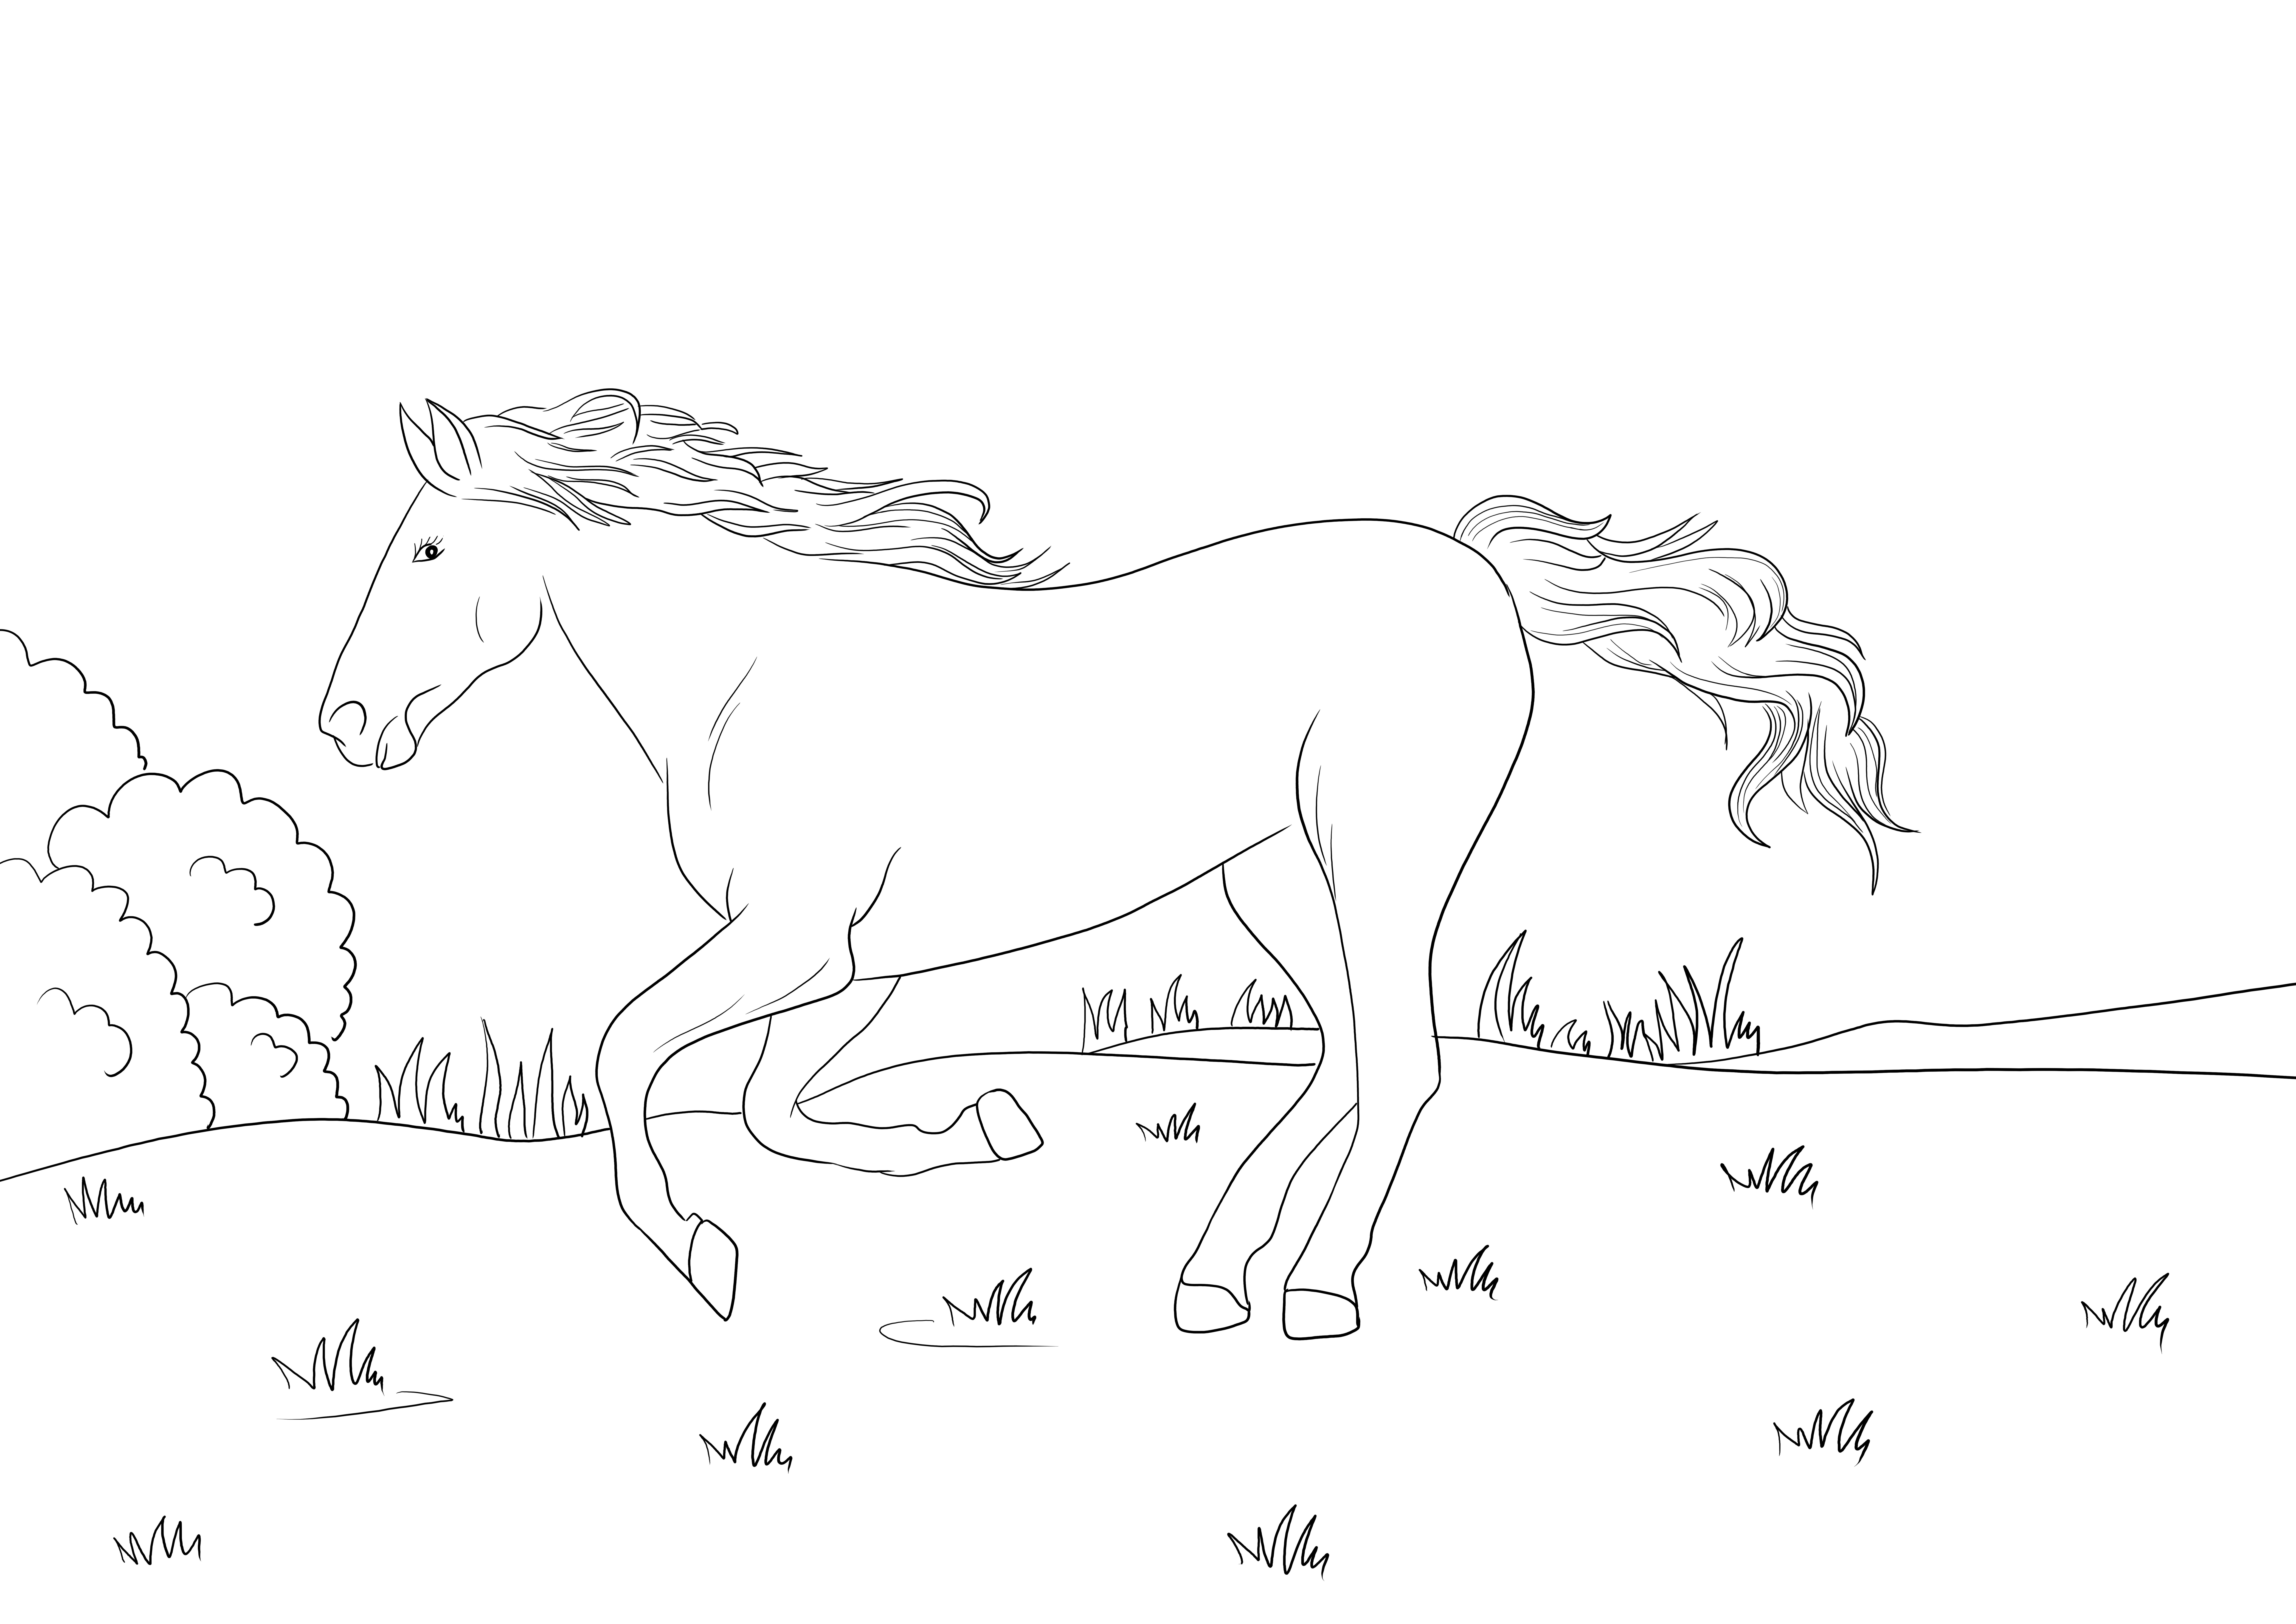 Mustang Koń rży darmowe drukowanie lub pobieranie dla dzieci do pokolorowania